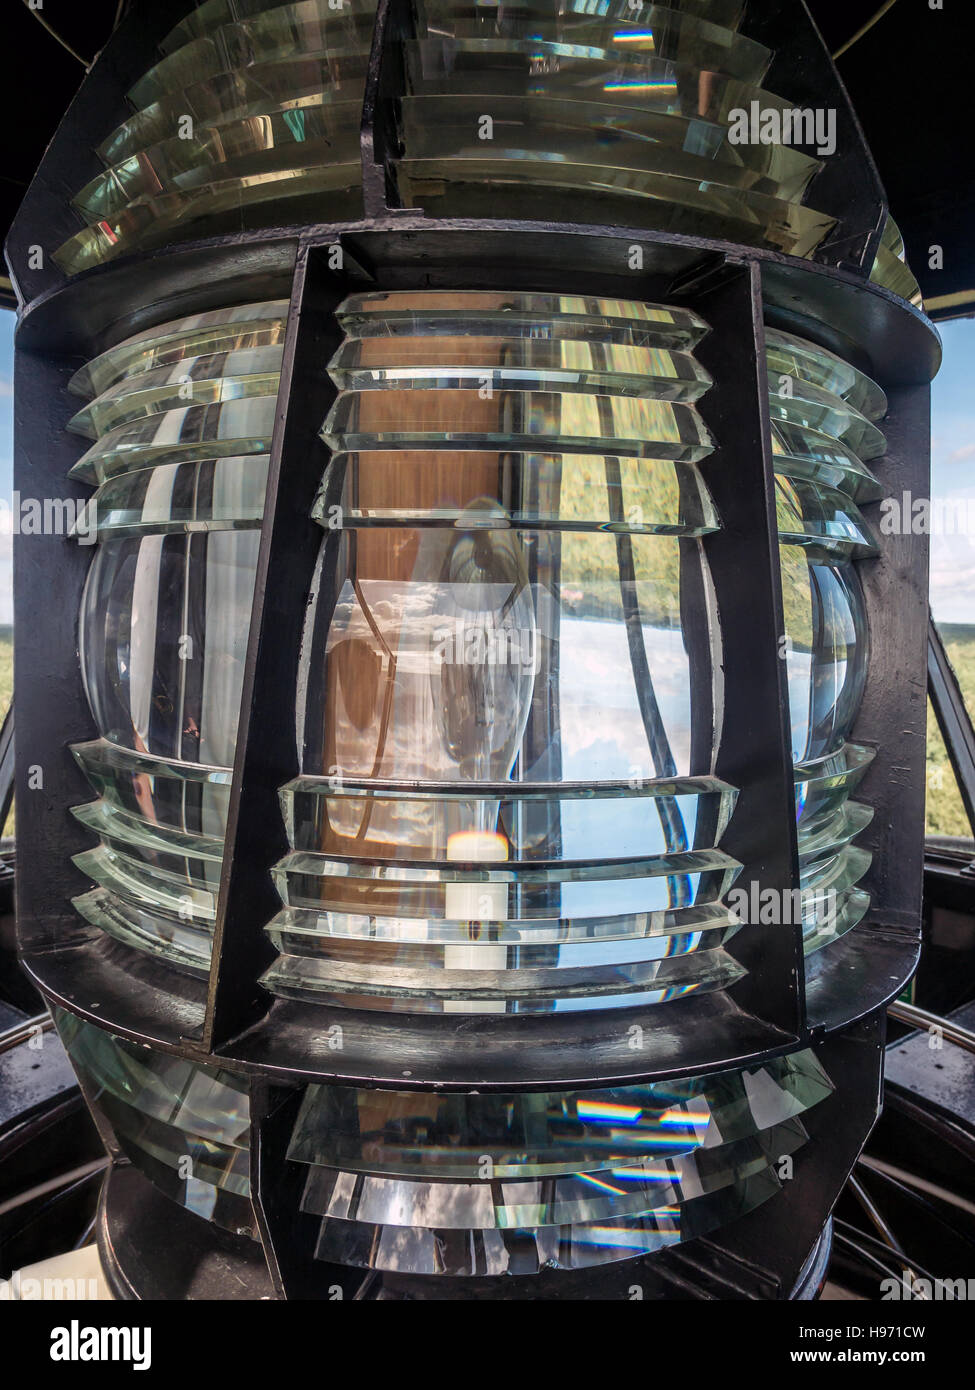 Closeup of lighthouse light fixture Stock Photo